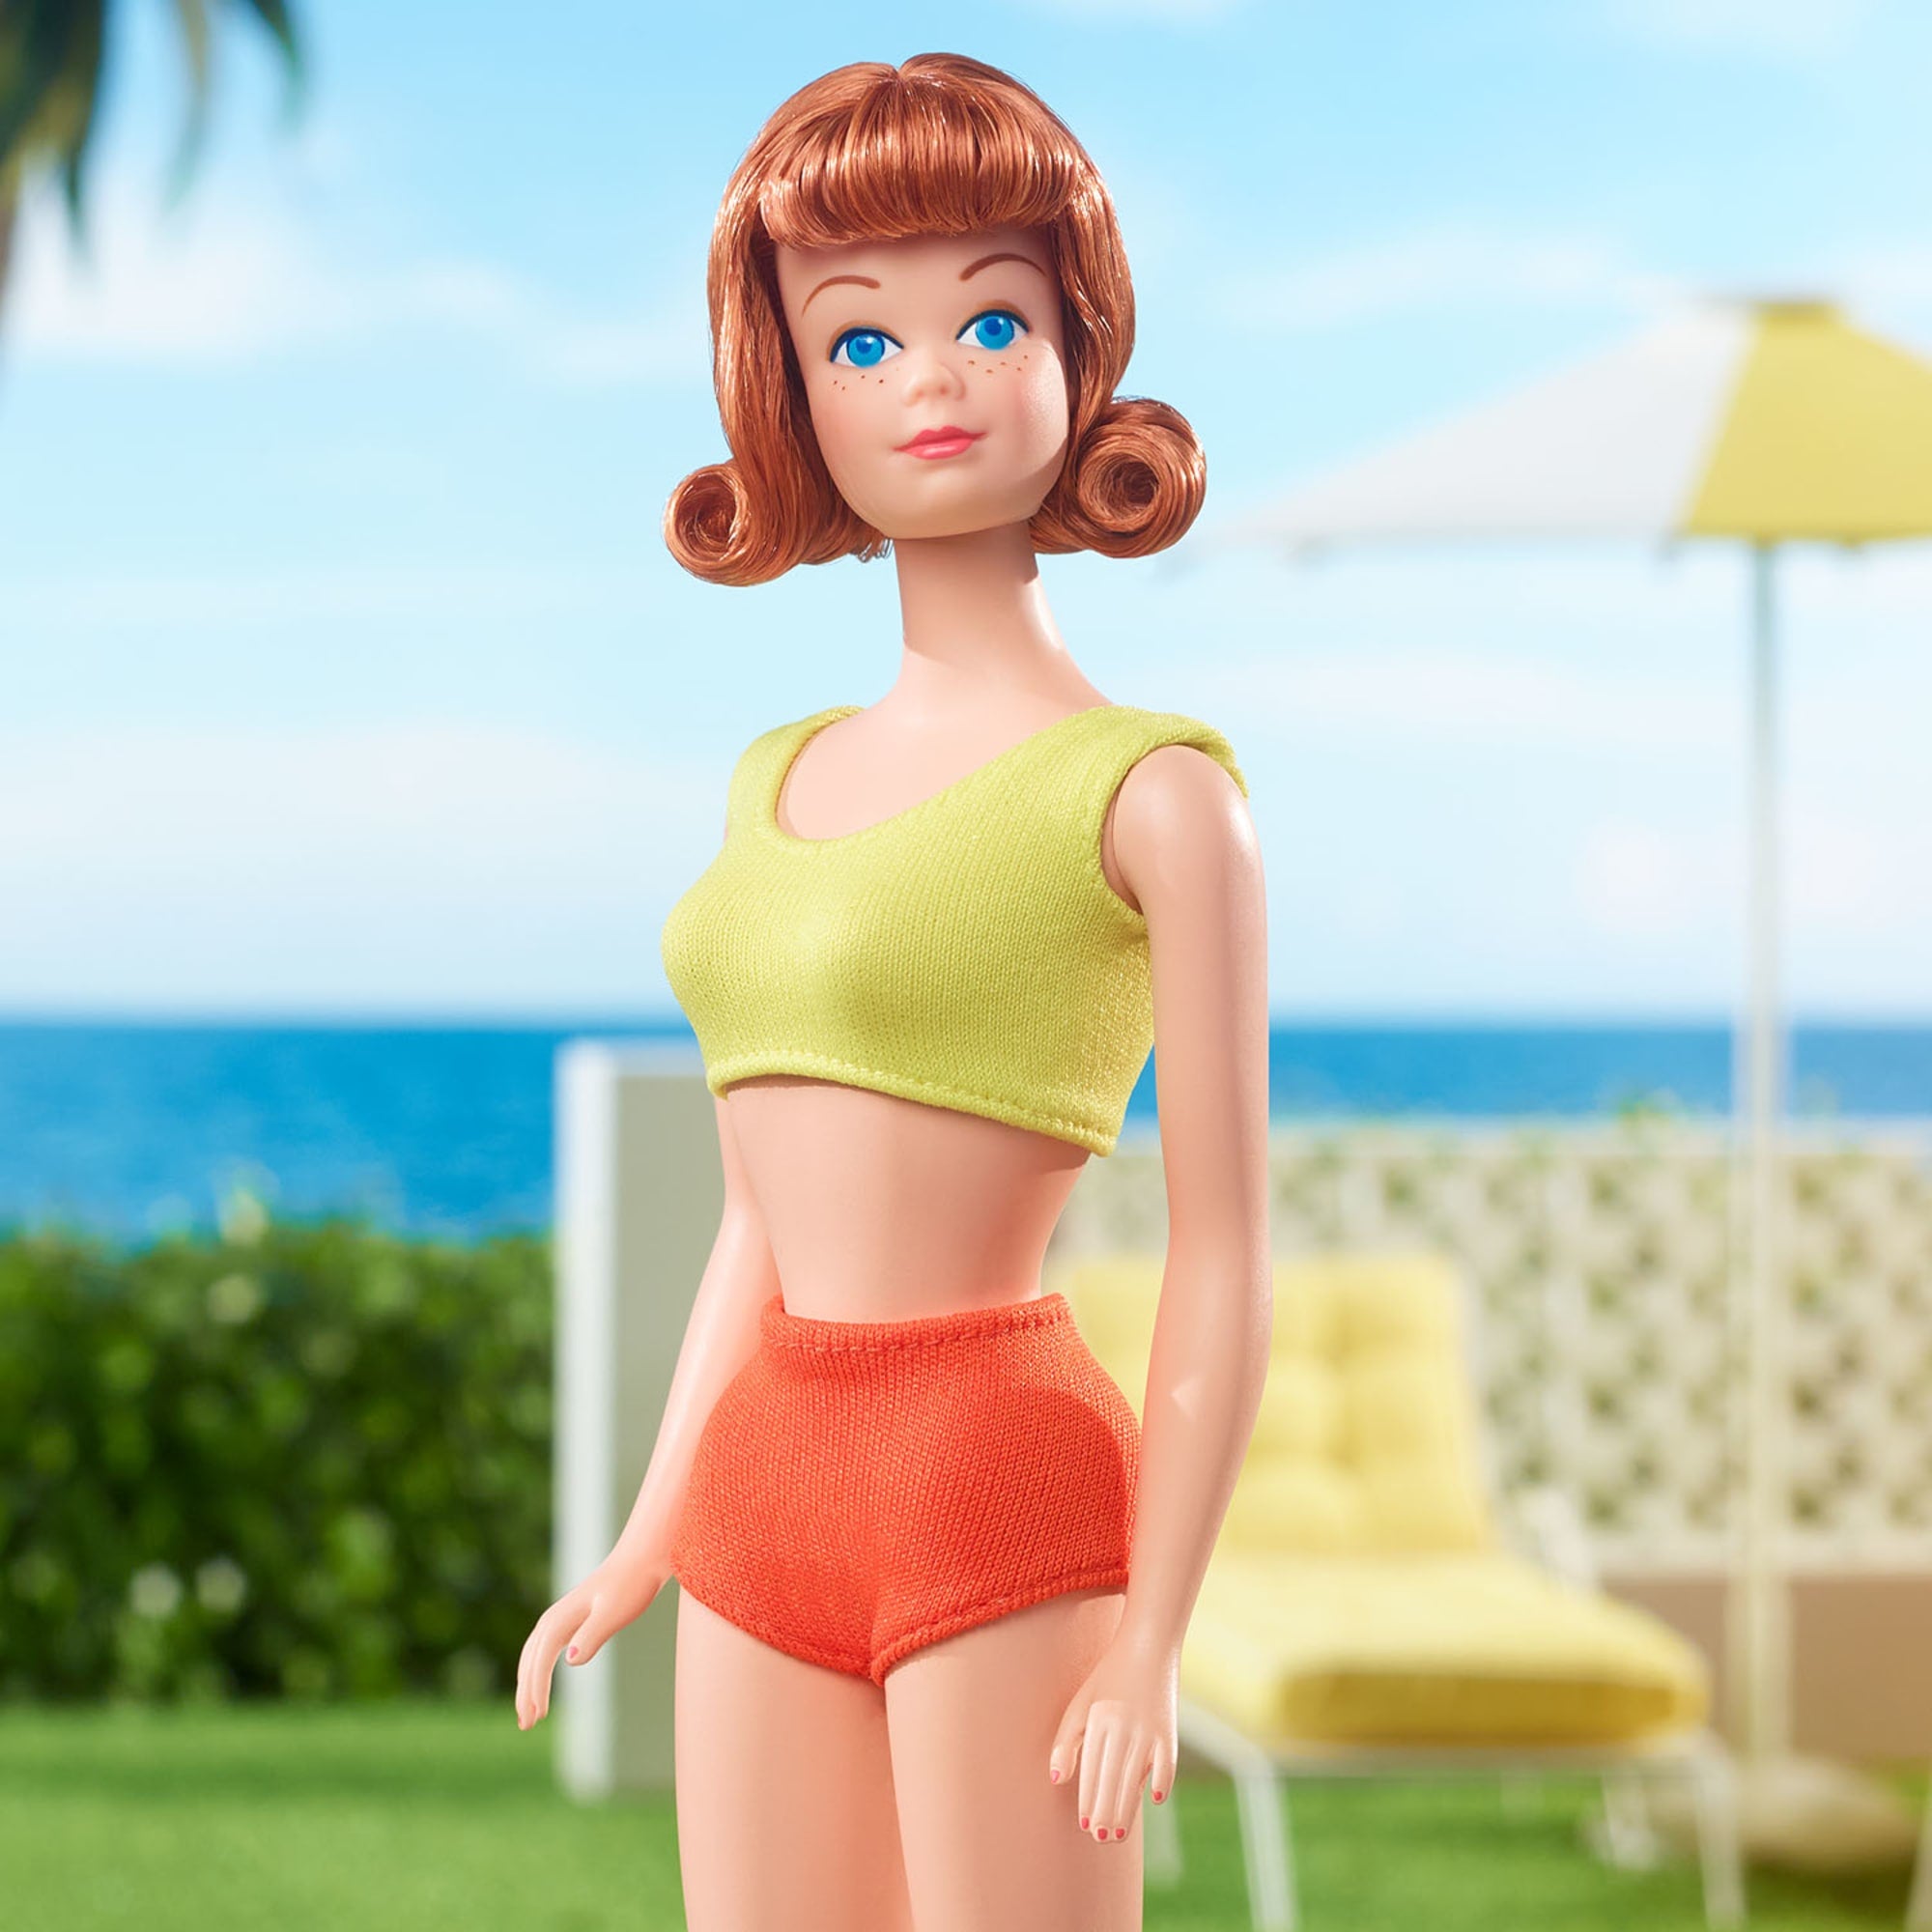 Bare overfyldt Fremskreden Forfalske 60th Anniversary Midge Vintage Reproduction Doll – Mattel Creations